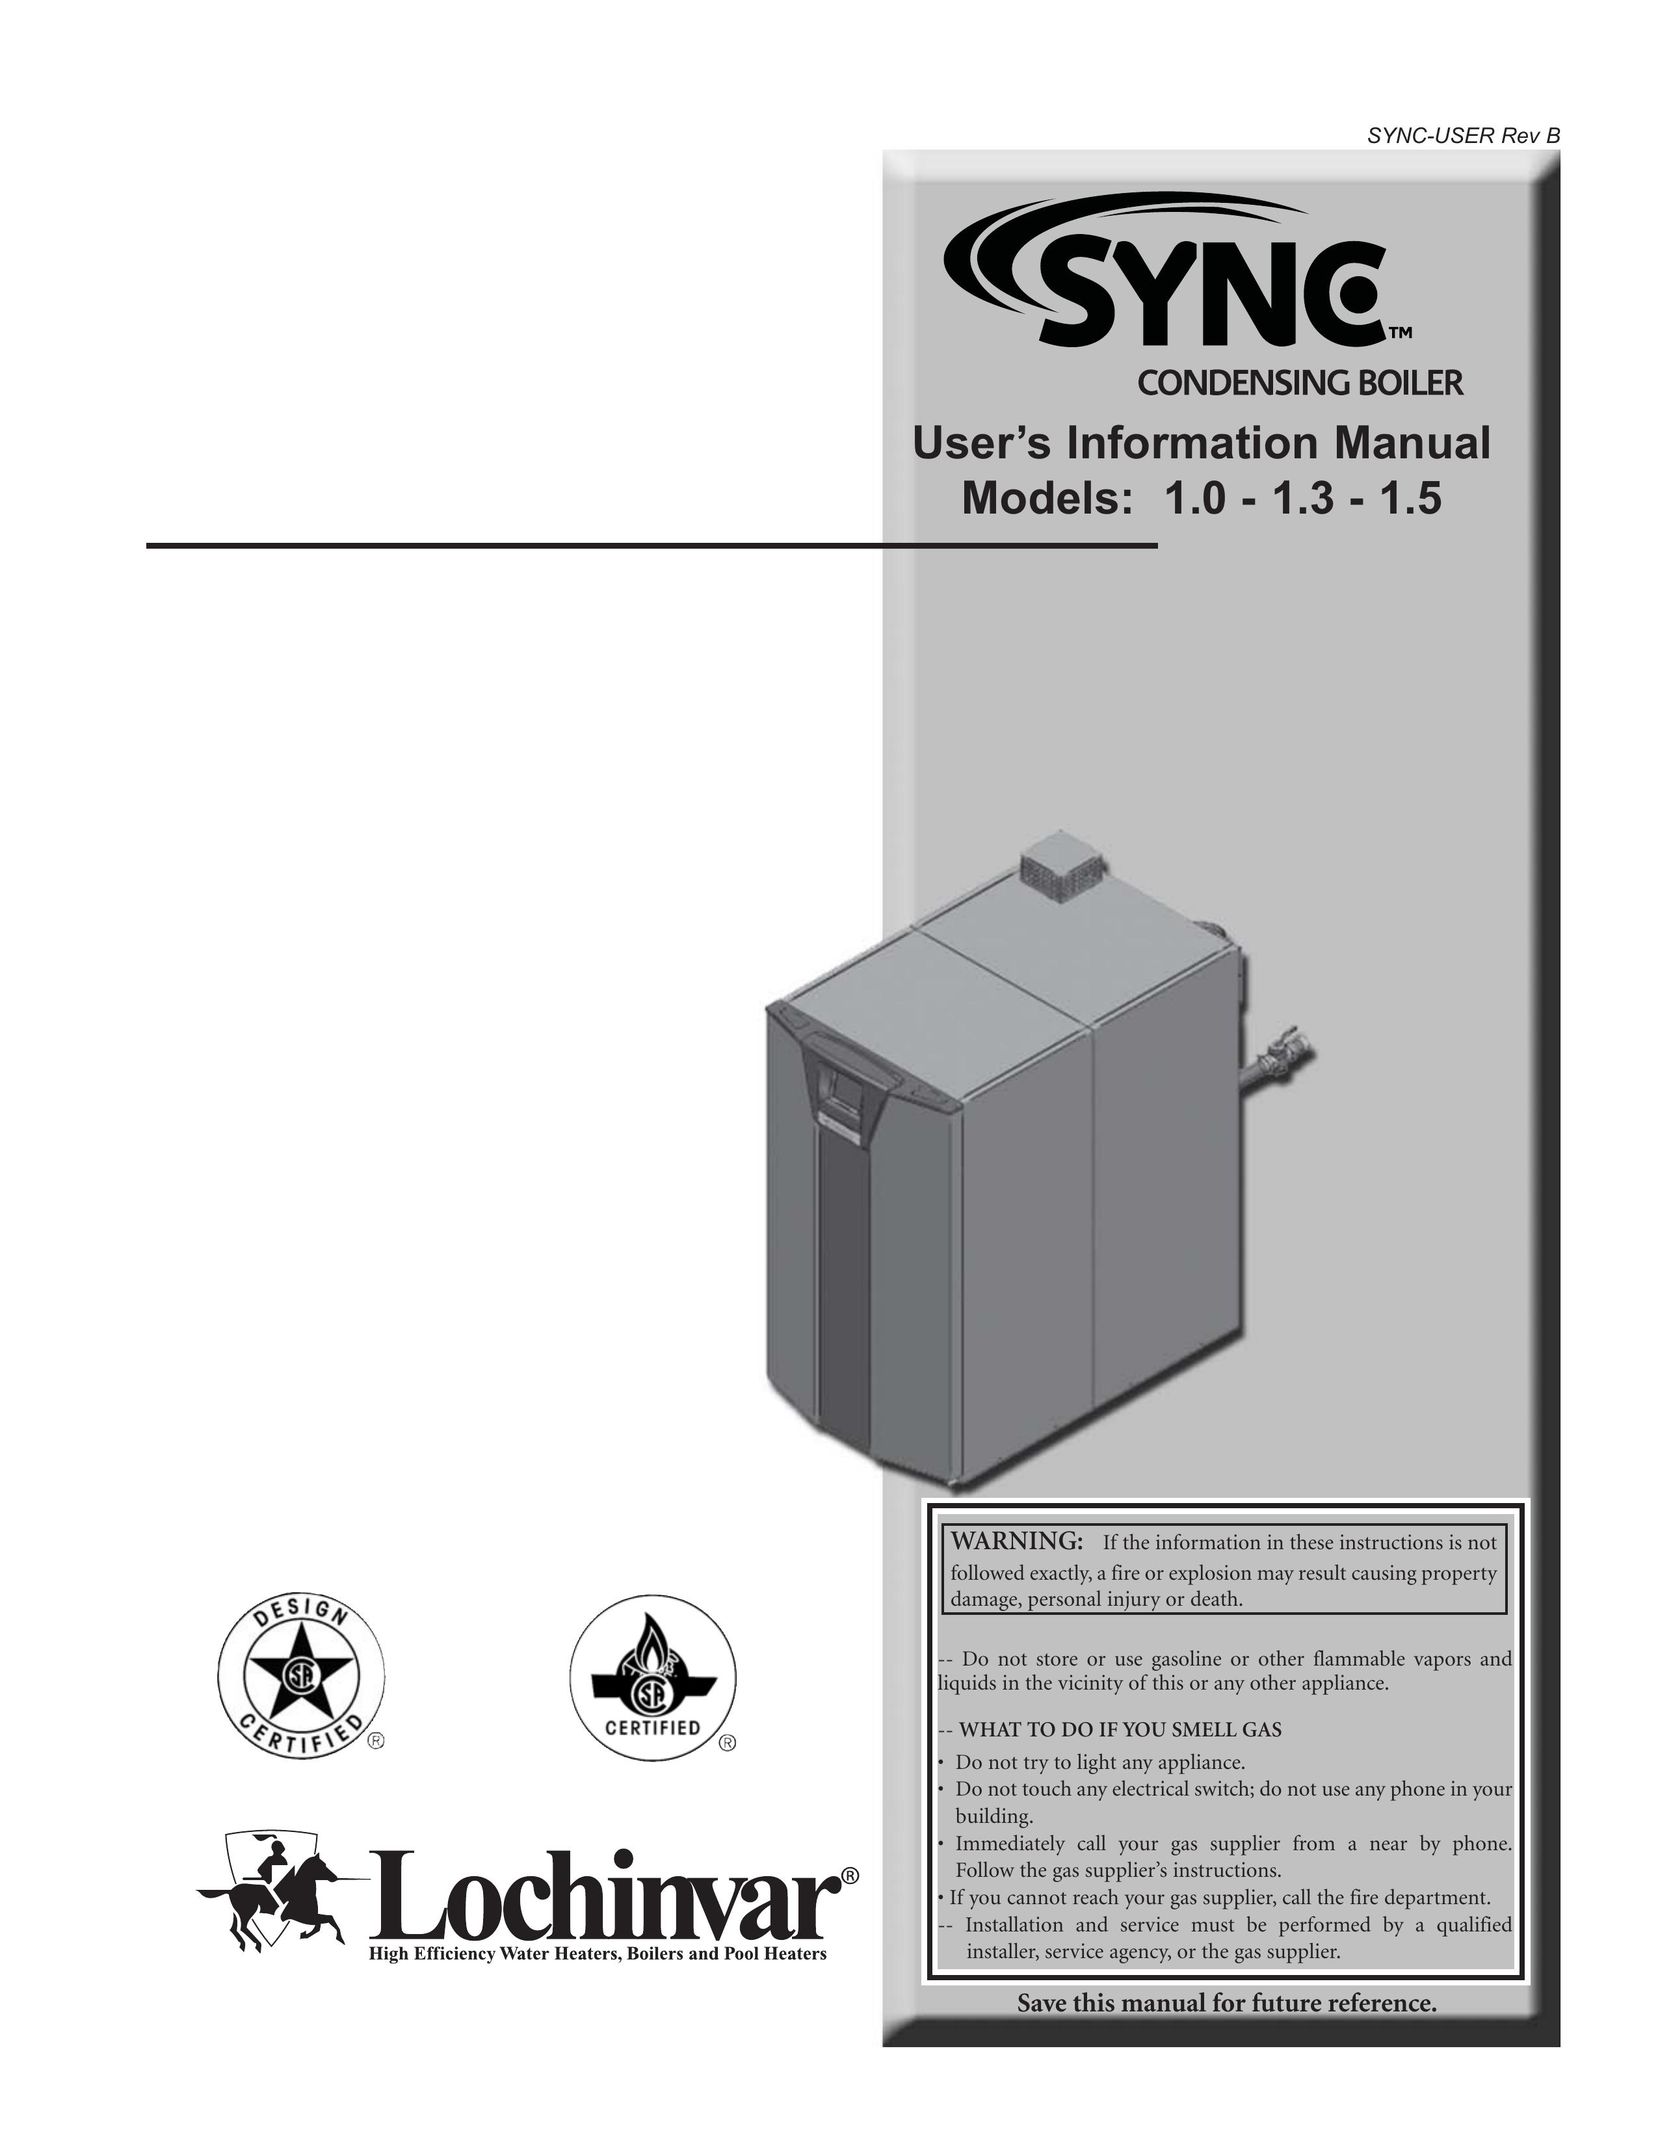 Lochinvar 1 Boiler User Manual